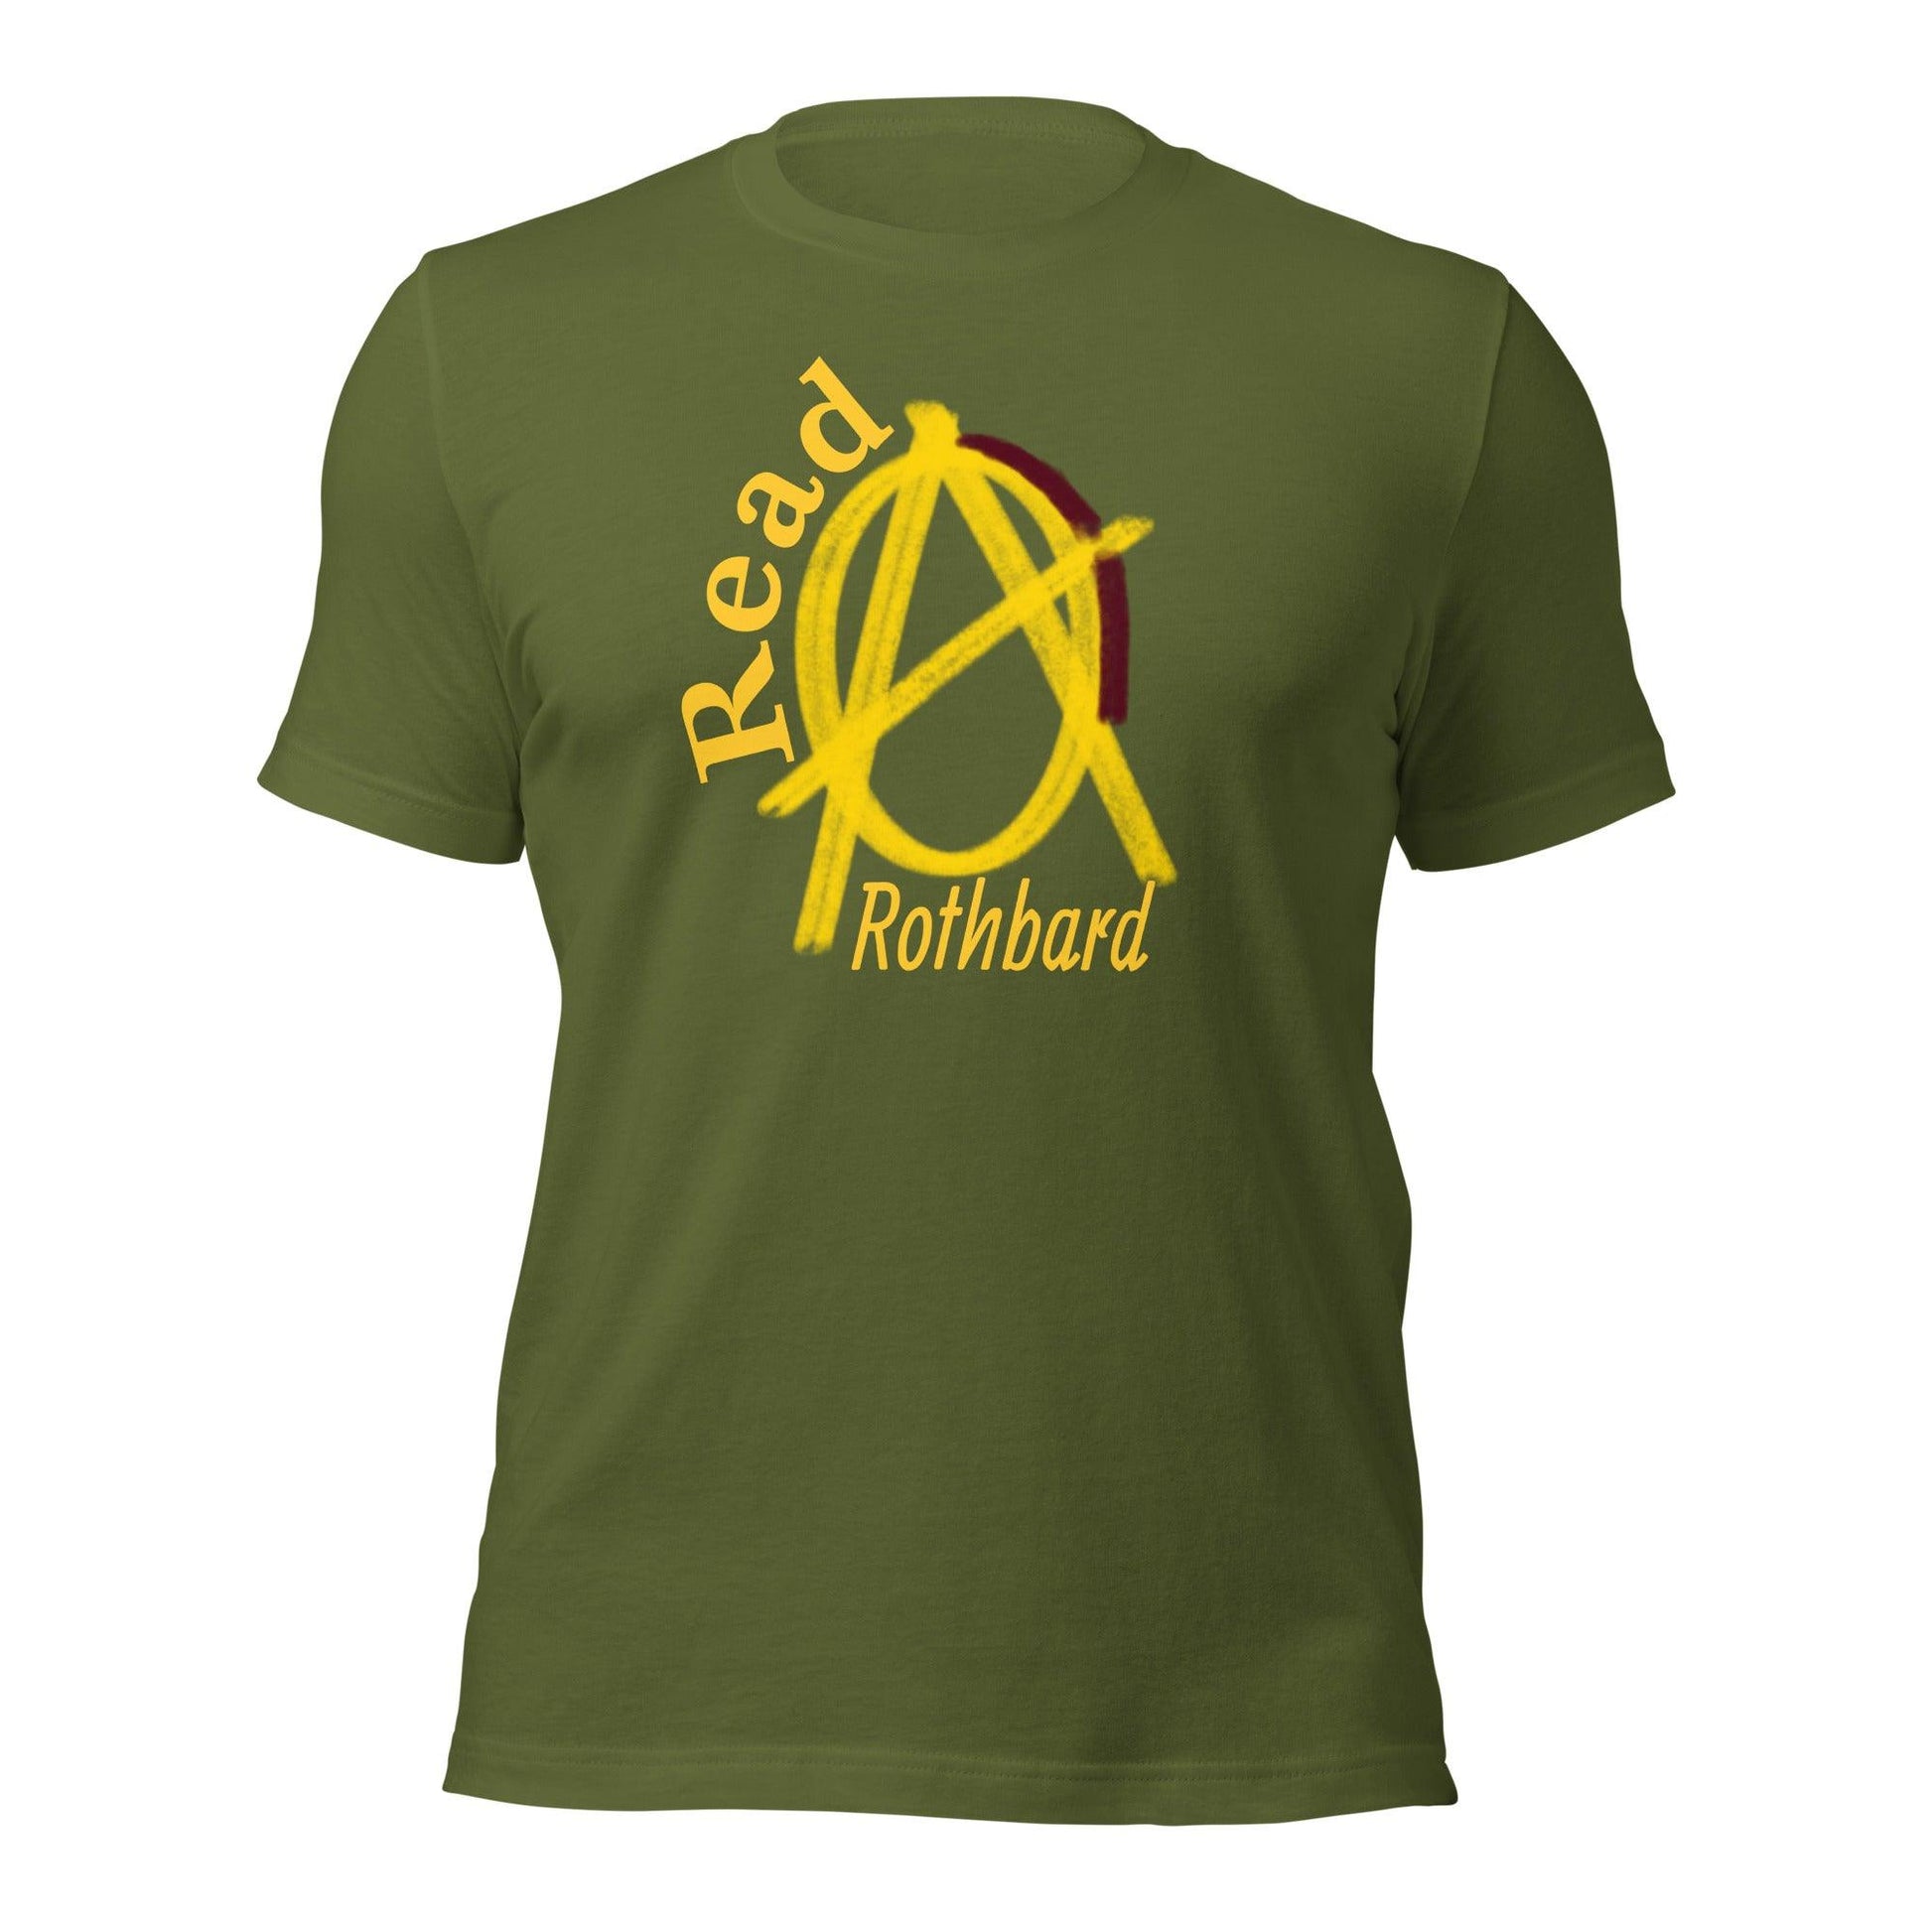 Anarchy Wear "Read Rothbard" Unisex t-shirt - AnarchyWear